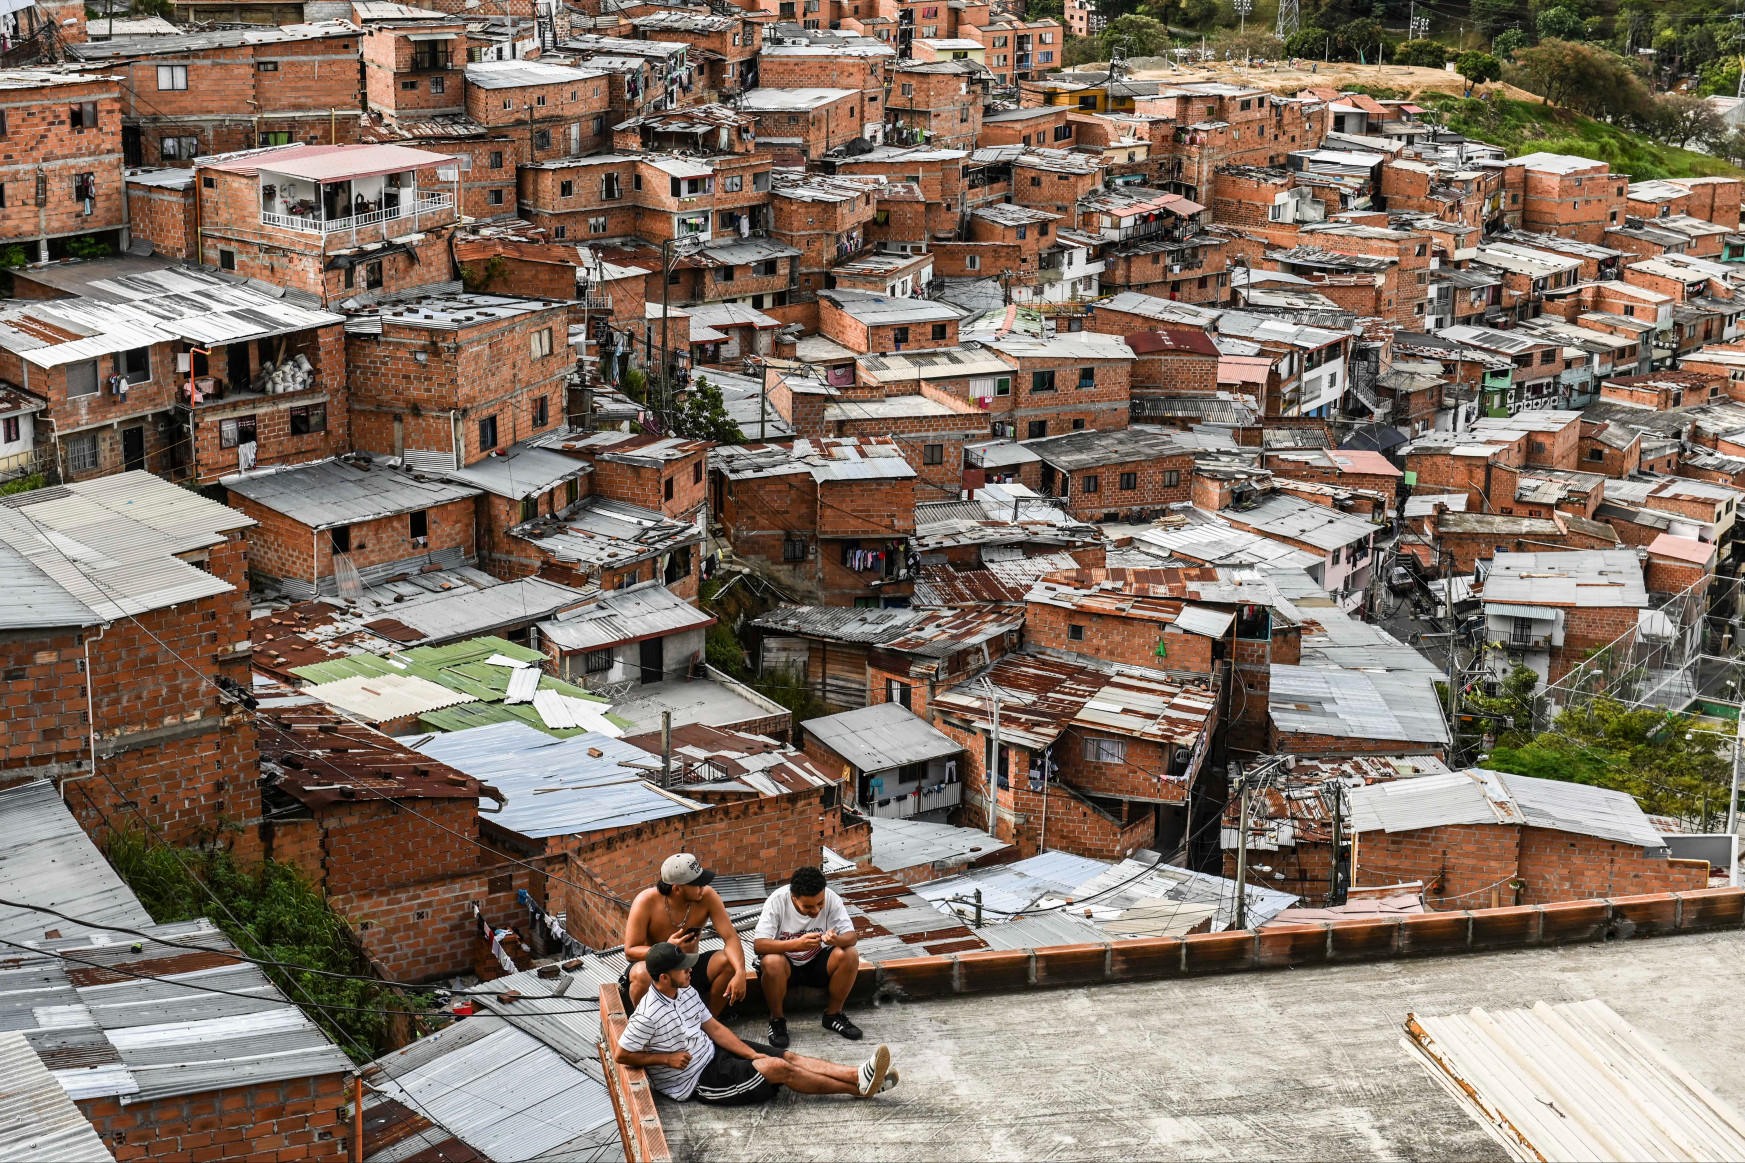 Hihetetlenül megváltozott, mégis örökre Escobar véres kokainvárosa marad Medellín